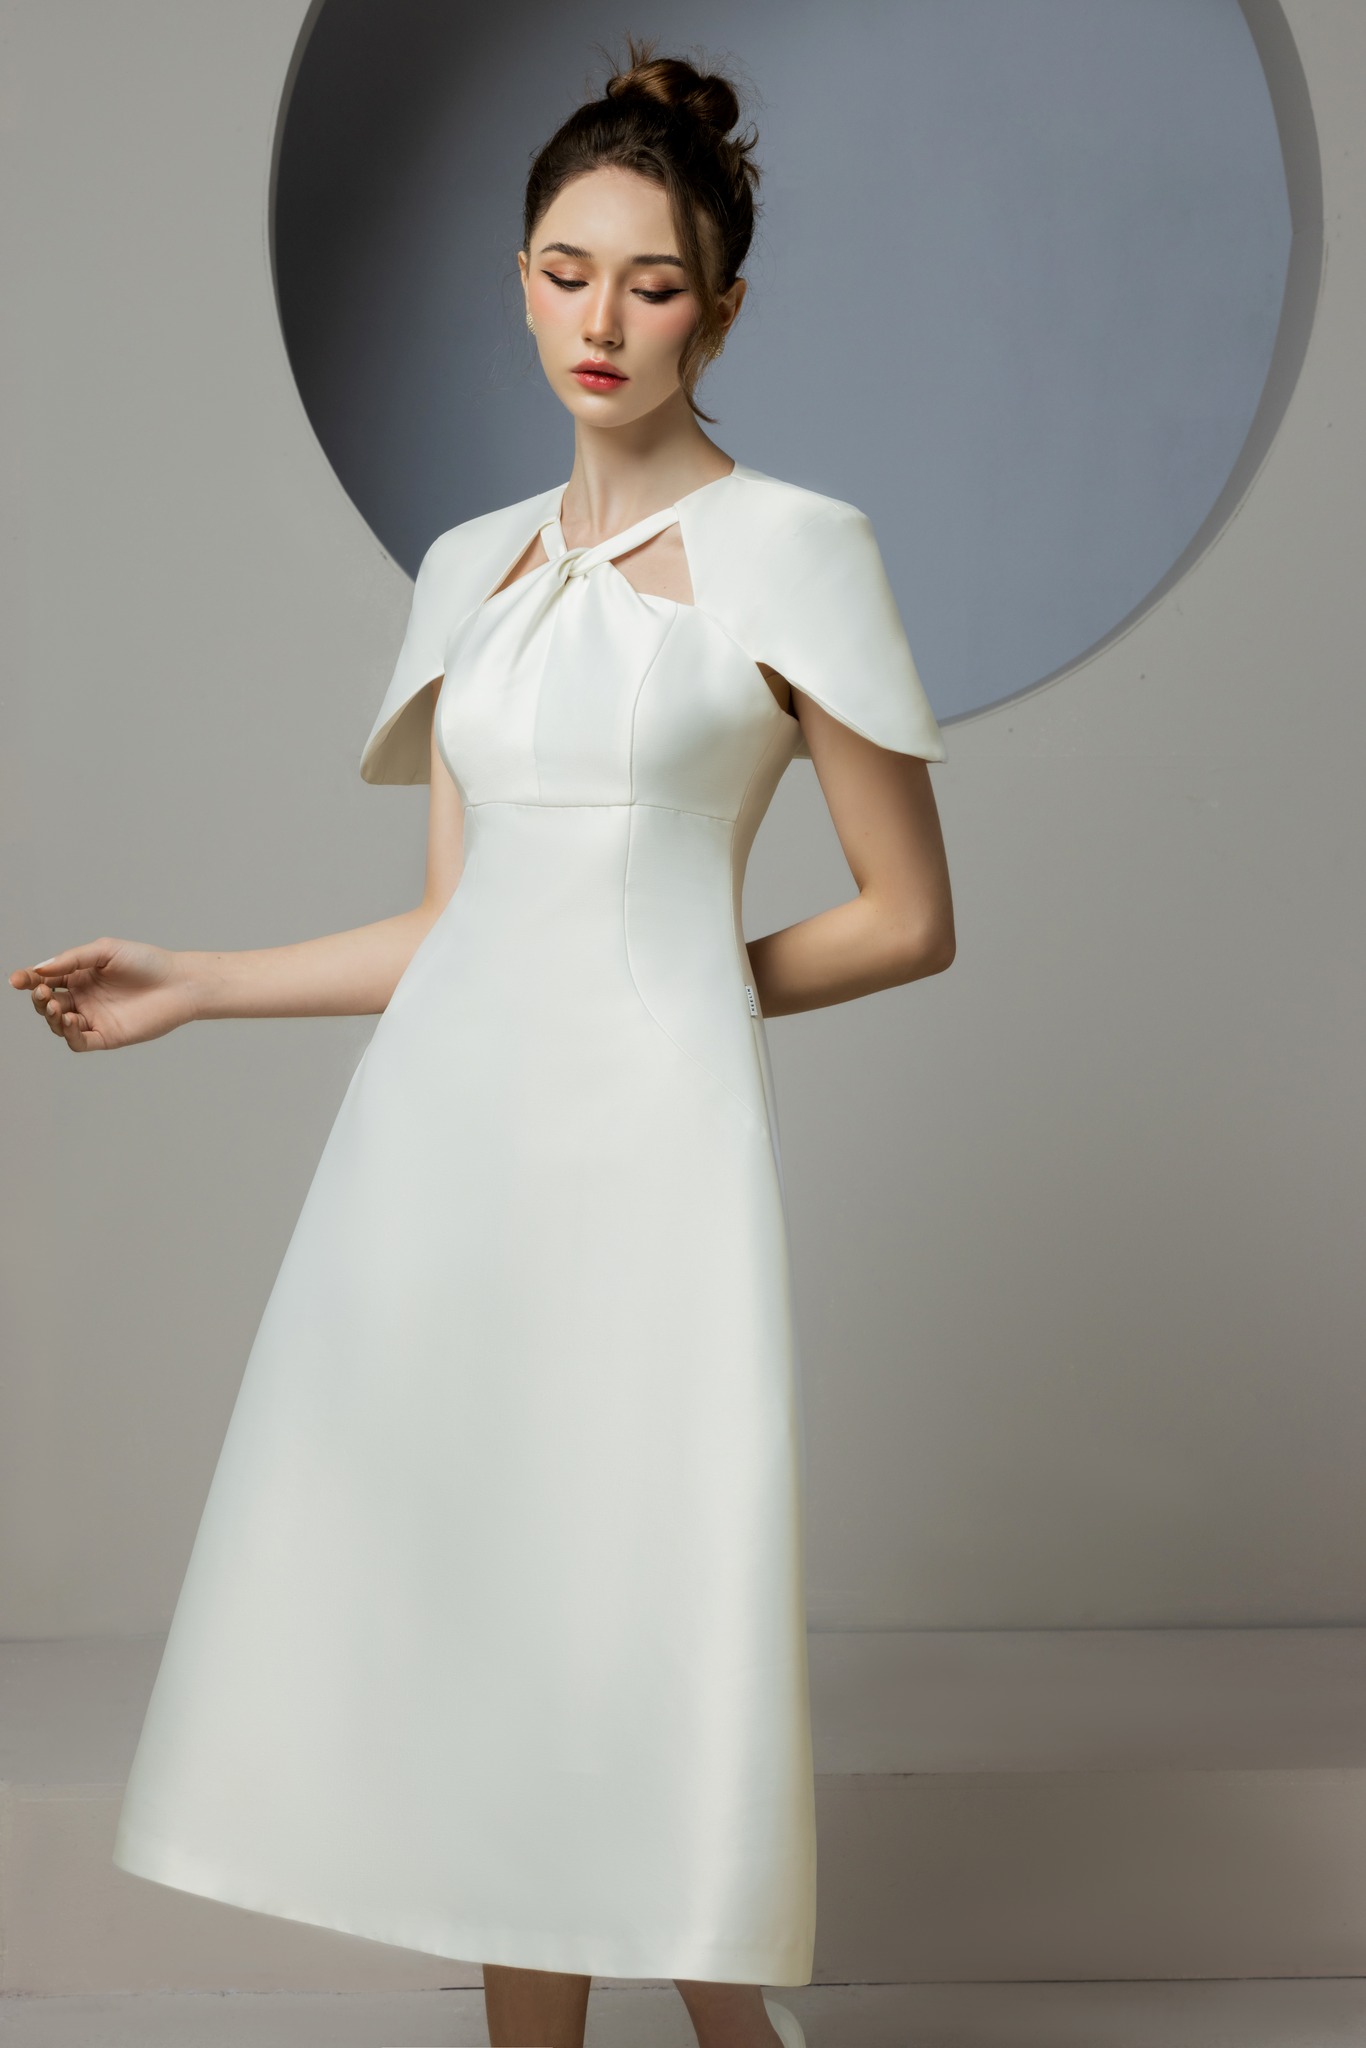 Váy cưới trễ vai đơn giản thiết kế đơn giản #1051